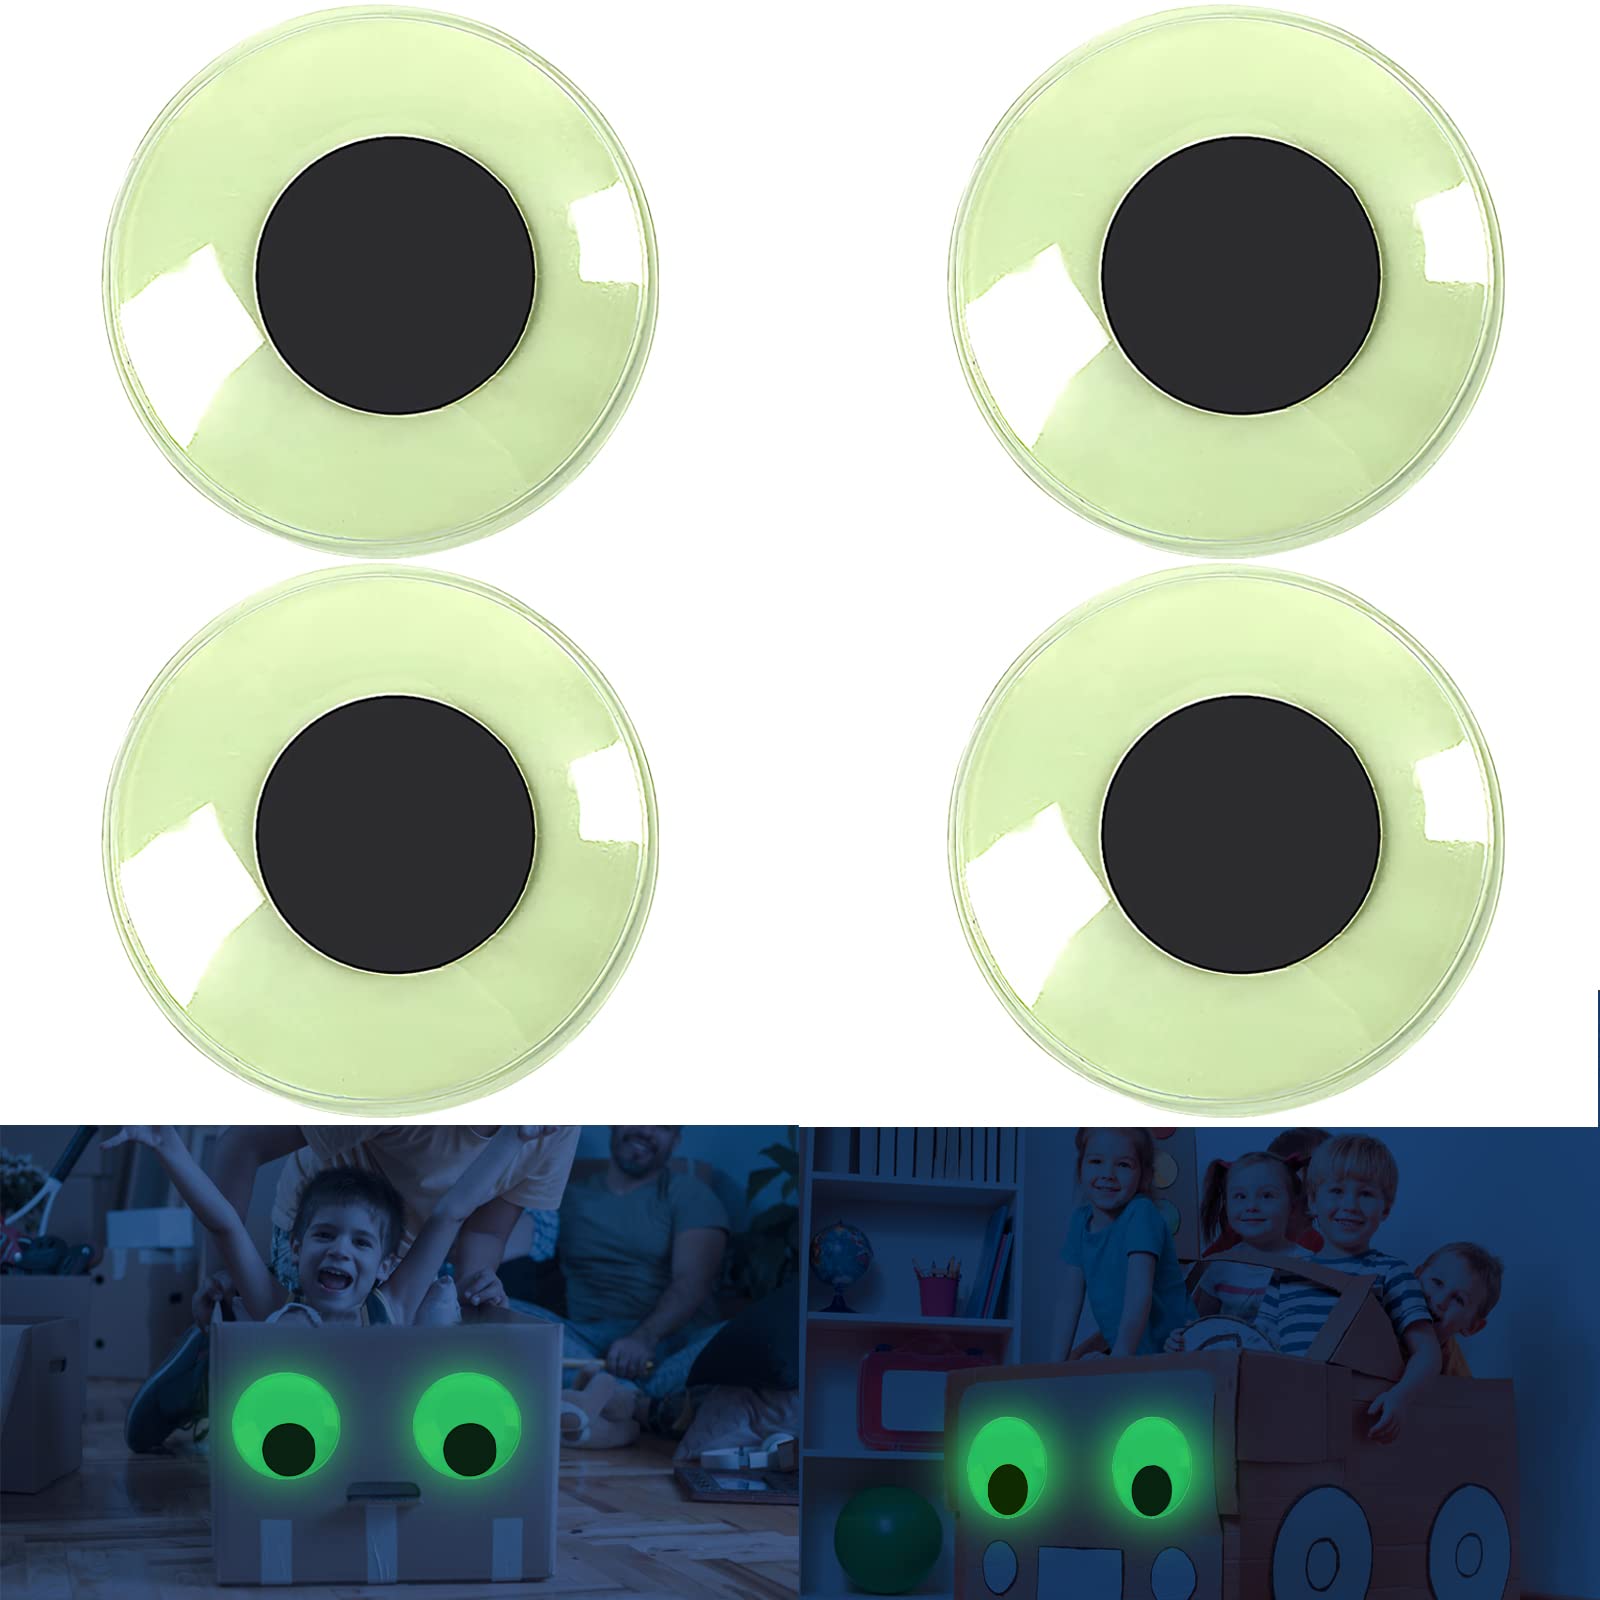 Funny google eyes - Googly Eyes - Sticker